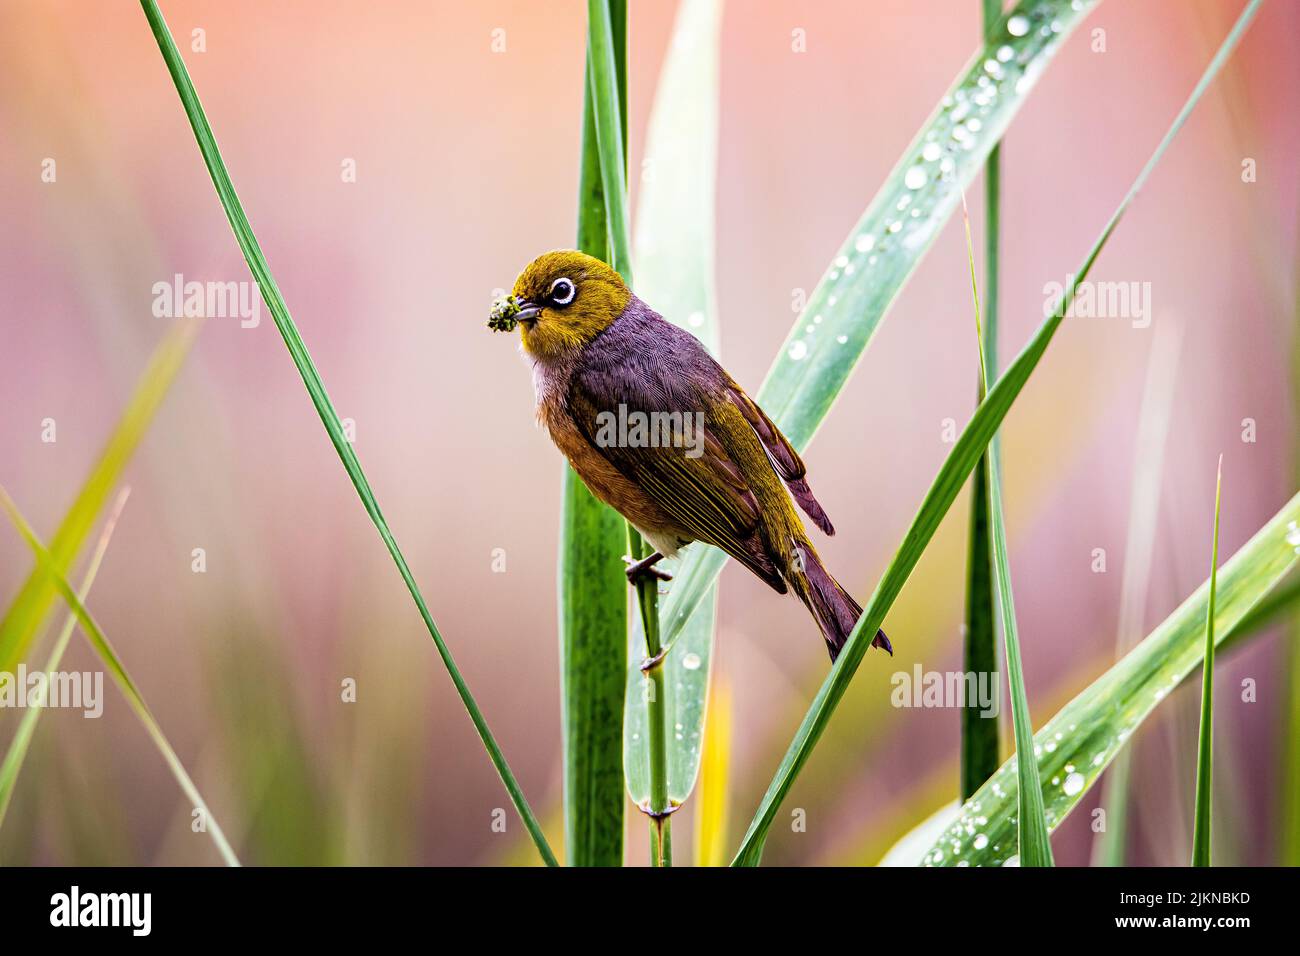 Eine Nahaufnahme eines farbenfrohen silbernen Auges-Vogels auf einer grünen Pflanze Stockfoto